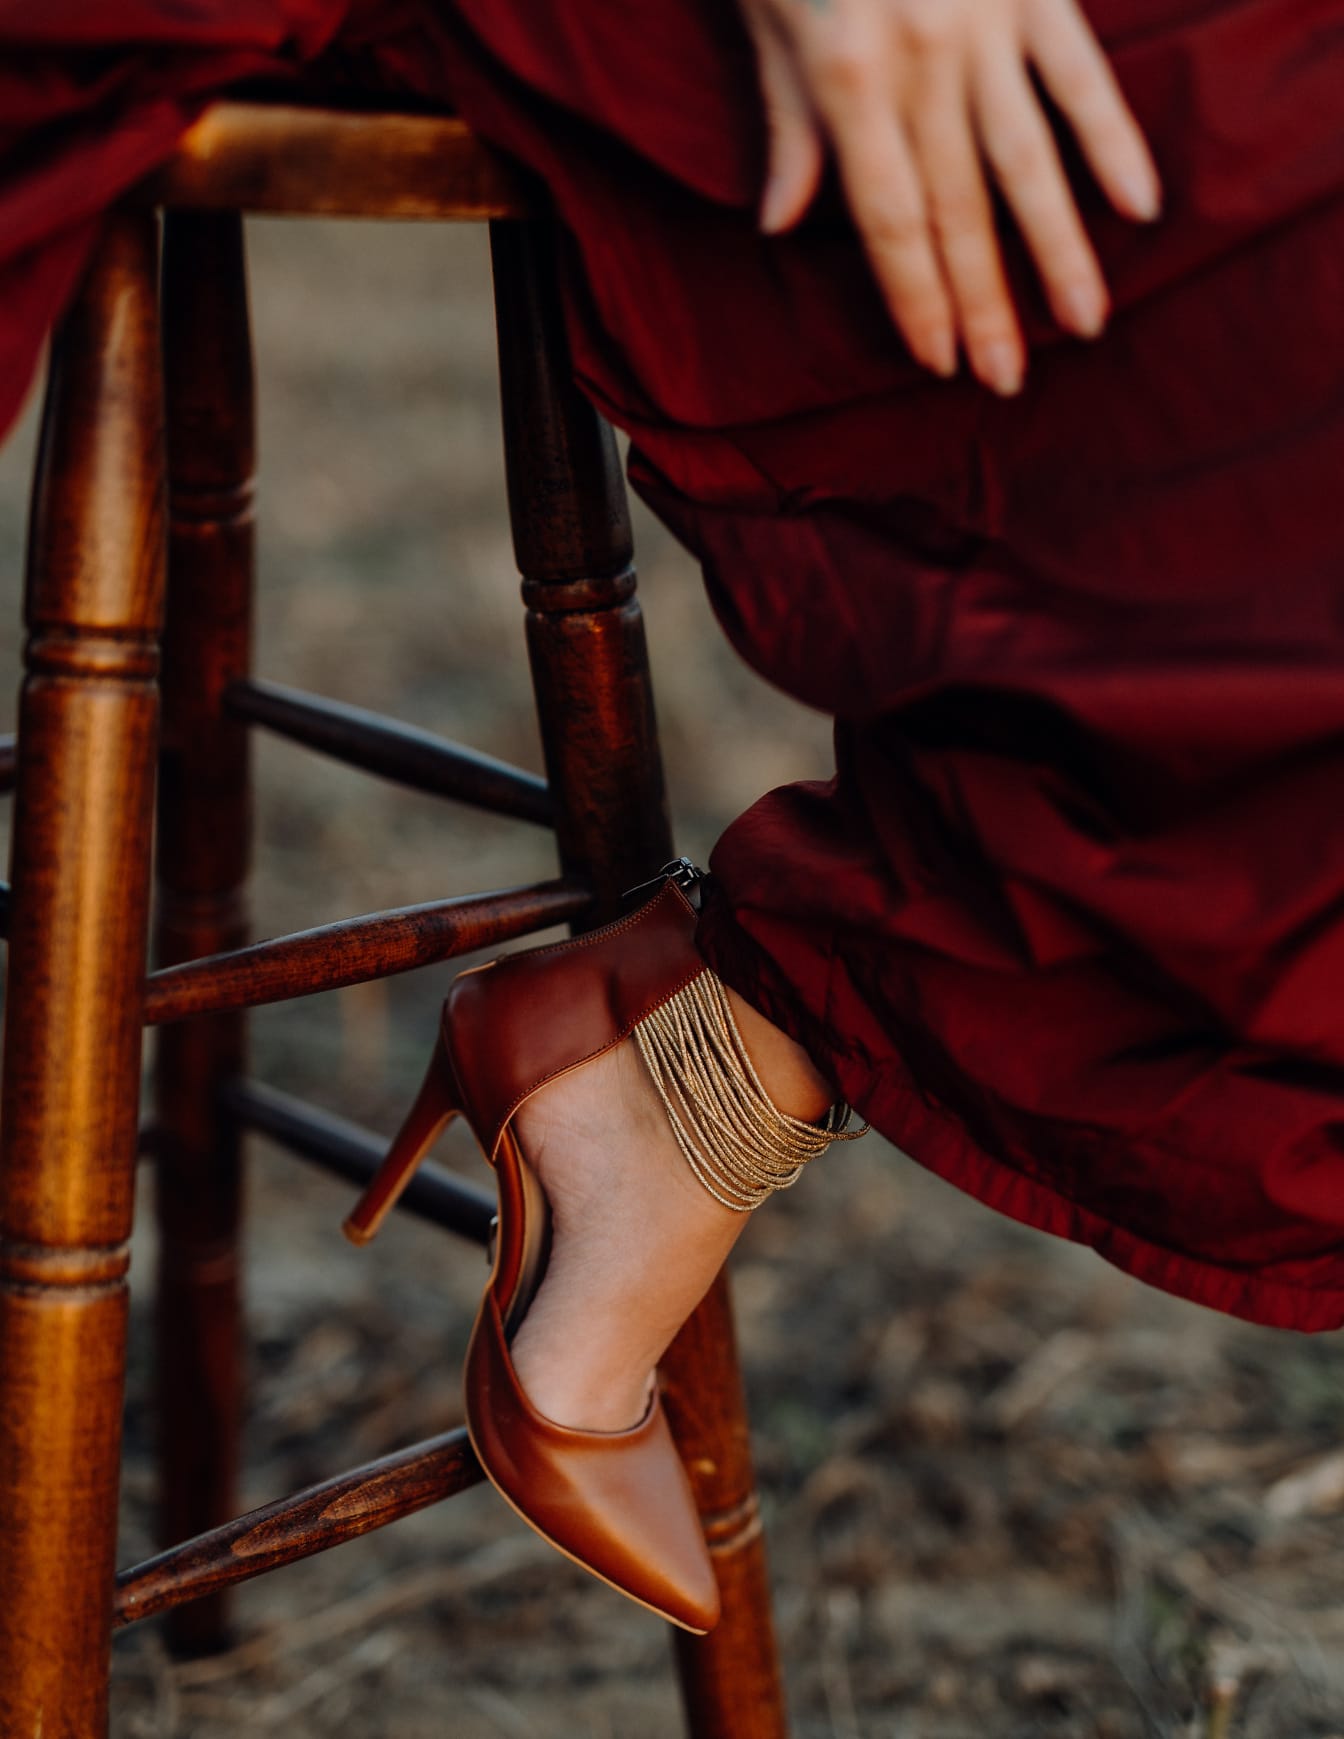 深红色凉鞋在坐在凳子上的红色连衣裙妇女的腿上